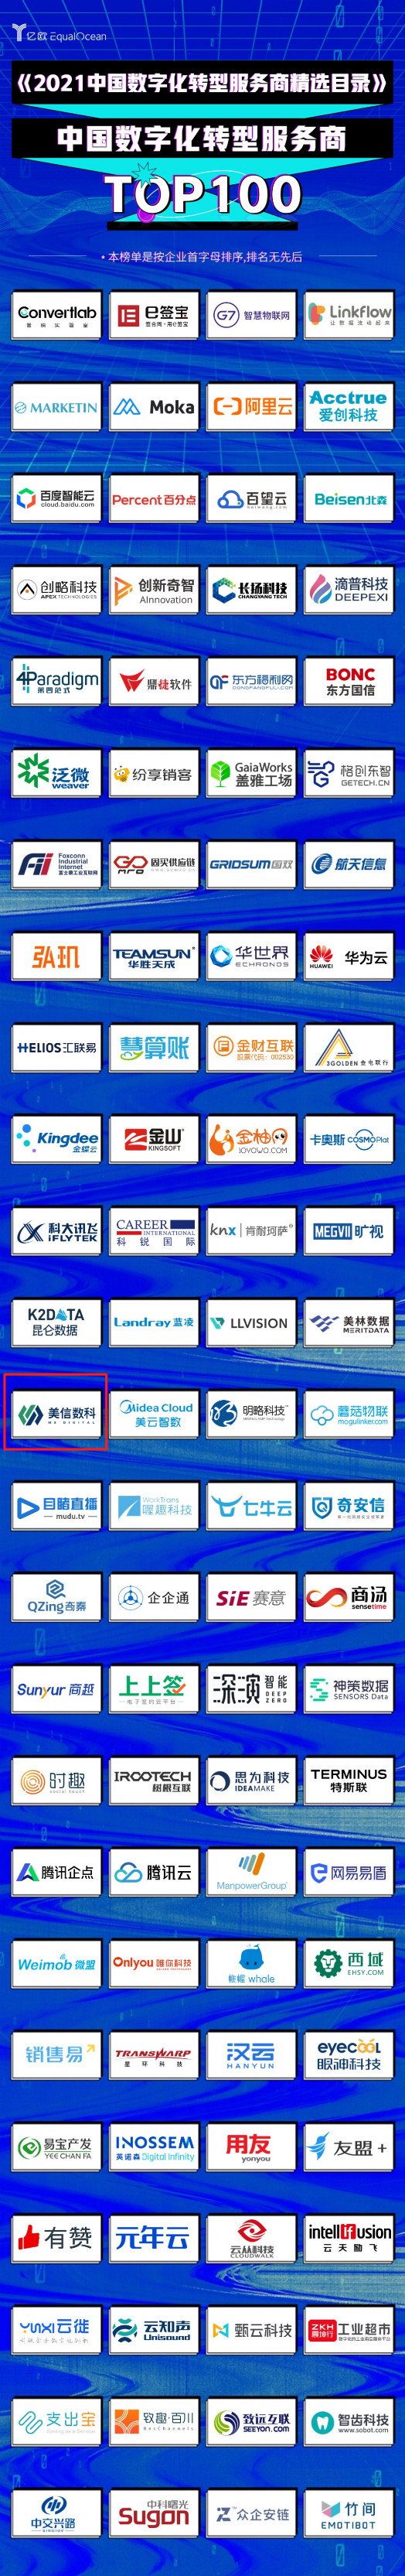 美信数科入选《2021中国数字化转型服务商TOP100榜单》